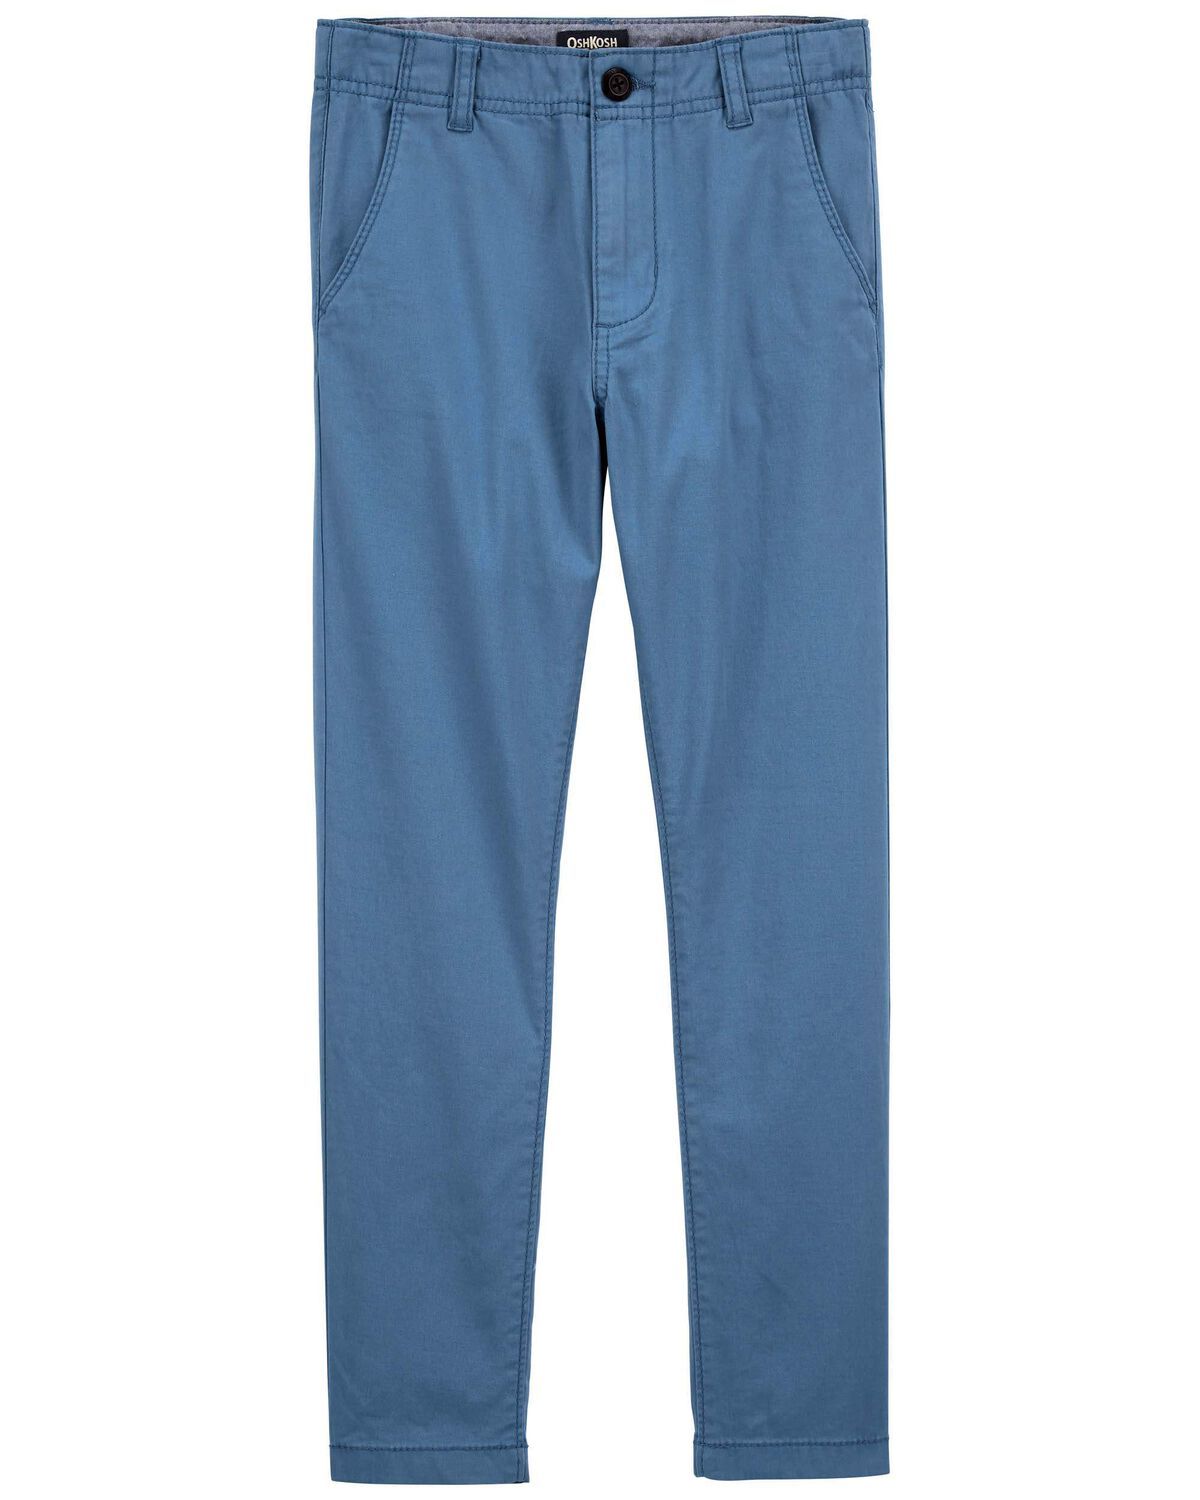 Blue Kid Slim Stretch Chino Pants | oshkosh.com | OshKosh B'gosh